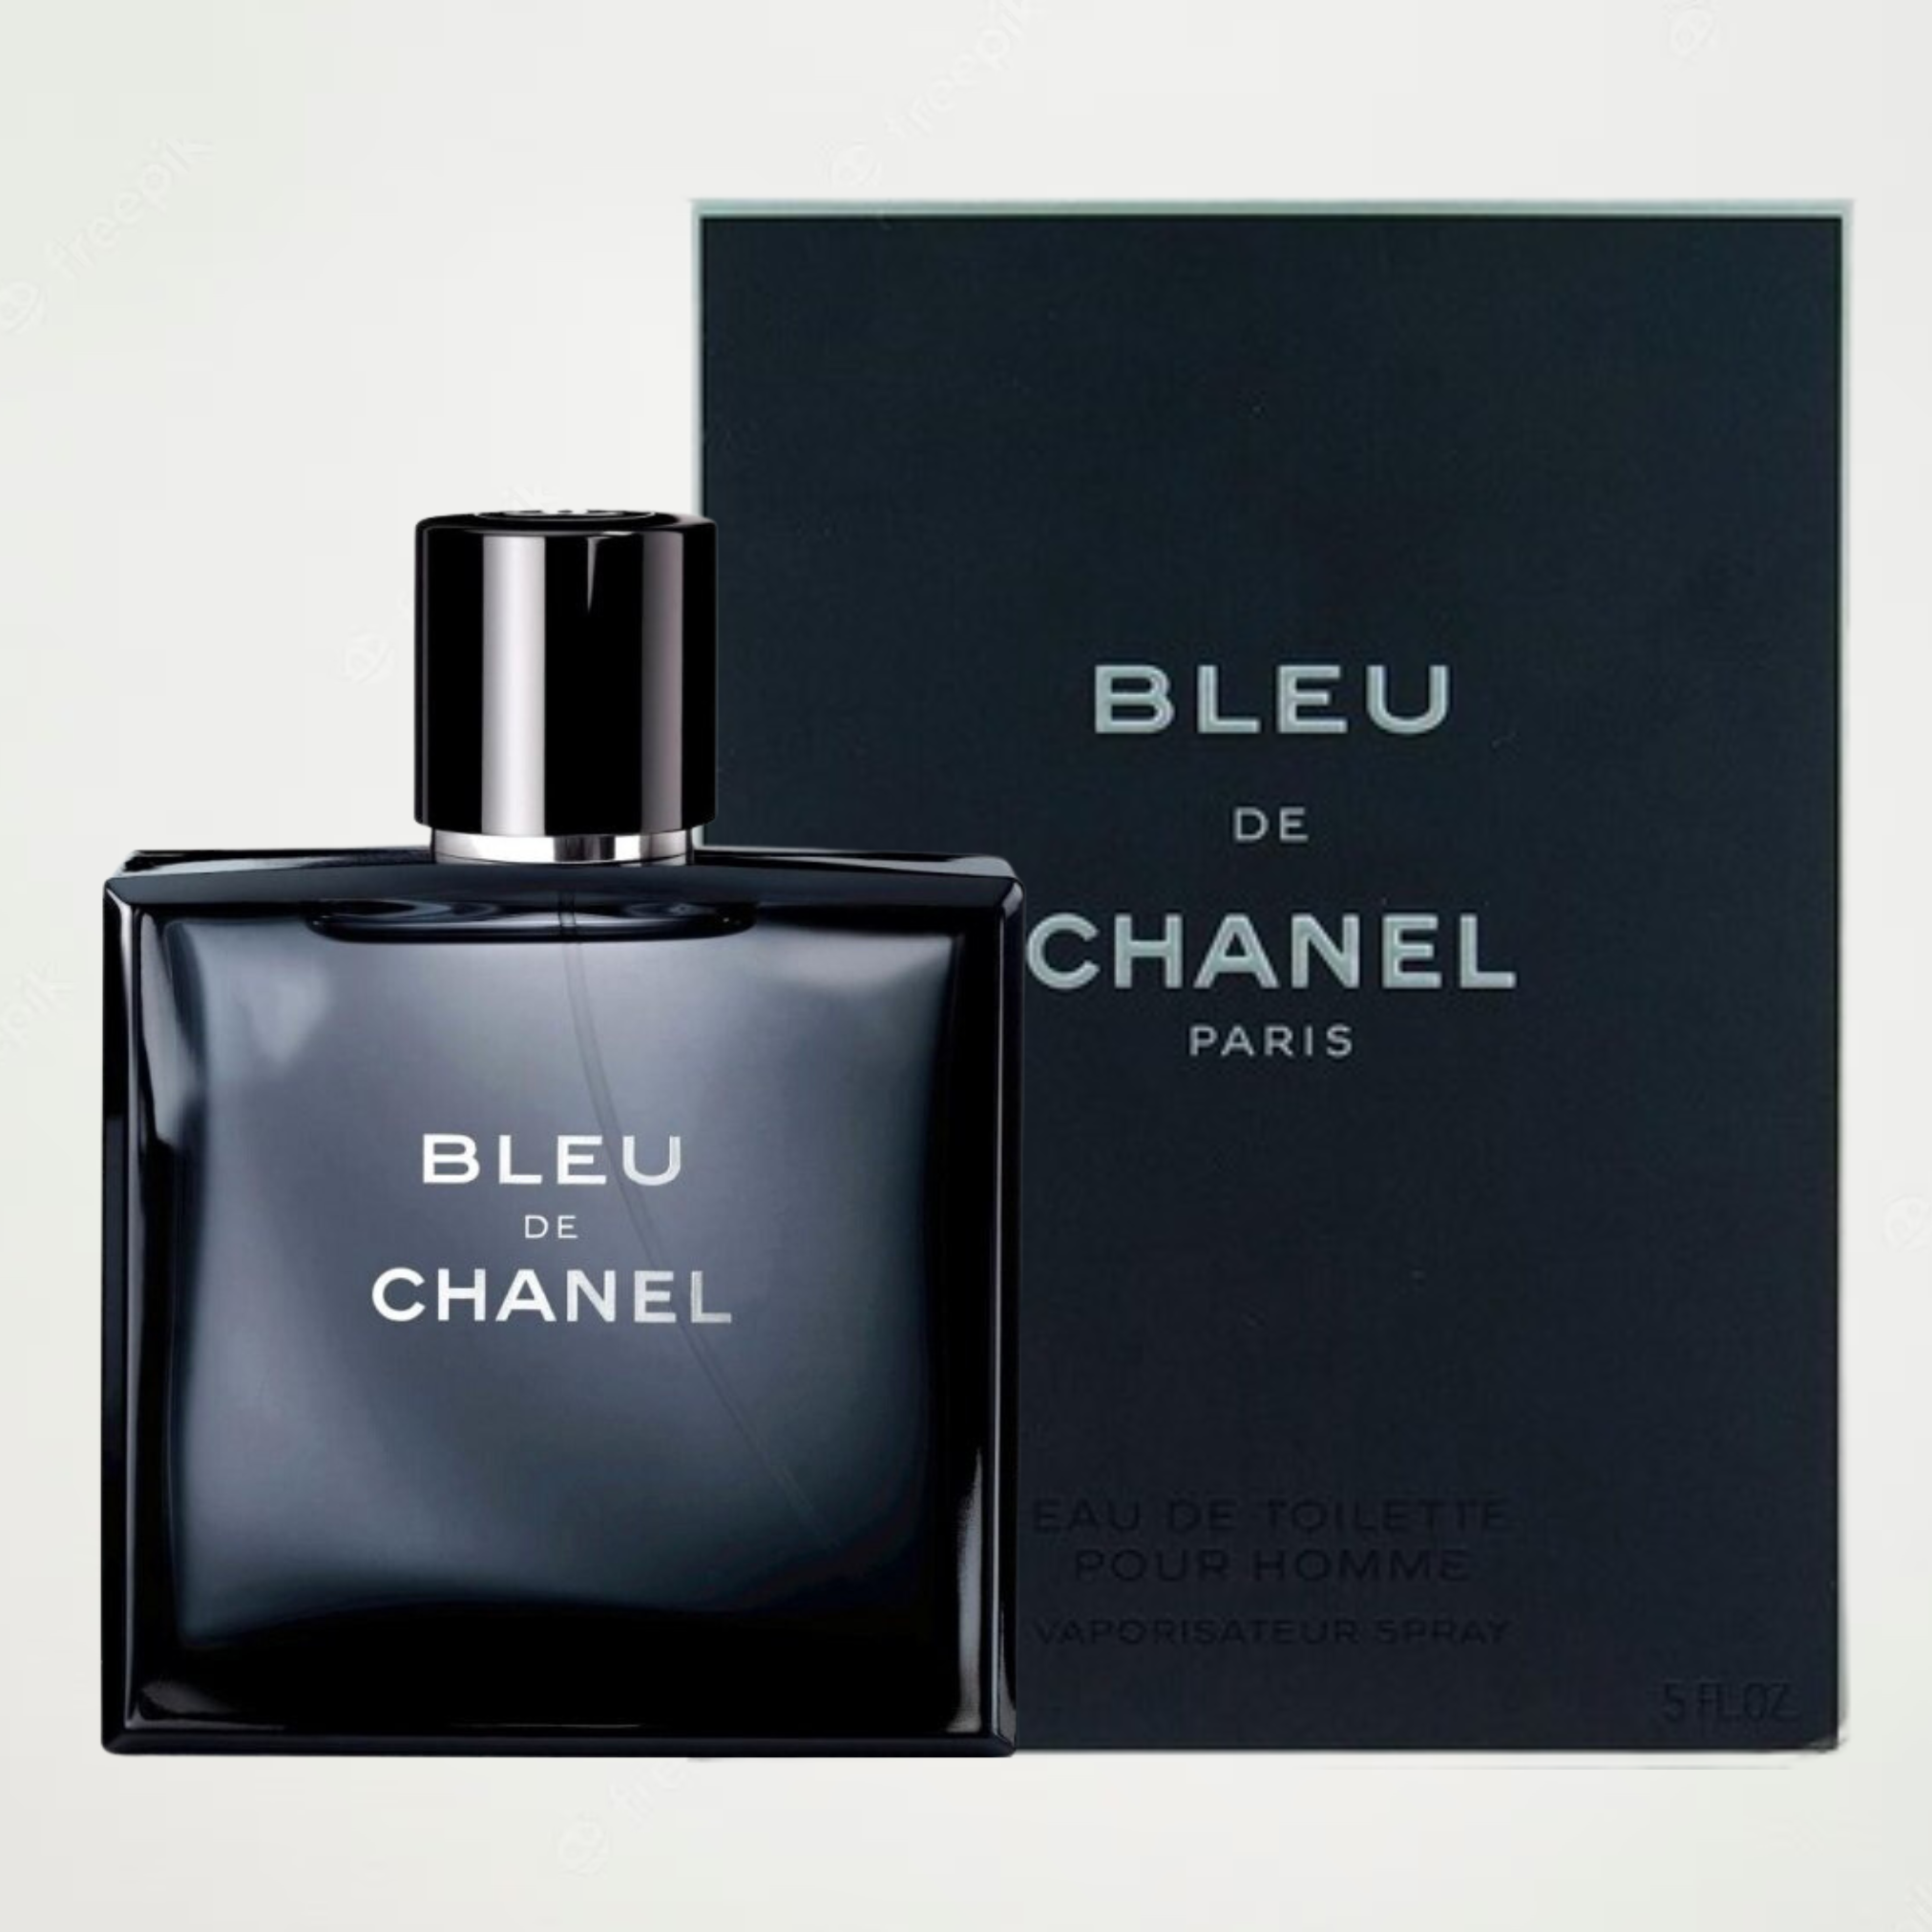 120 Value) Chanel Bleu De Chanel Eau De Parfum Spray, Cologne for